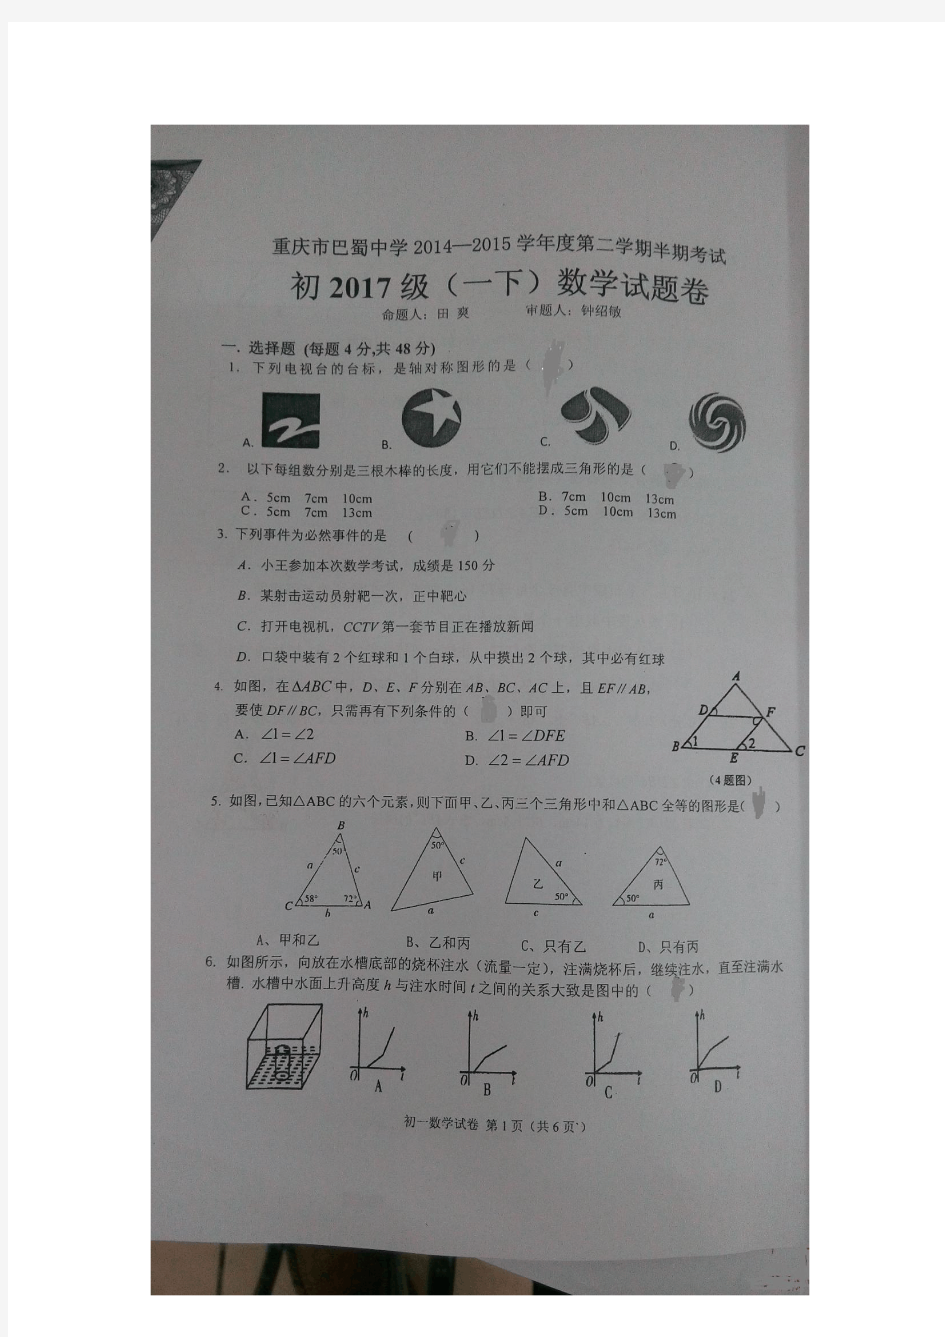 重庆市巴蜀中学2014-2015年初一下学期期中测试(图片)